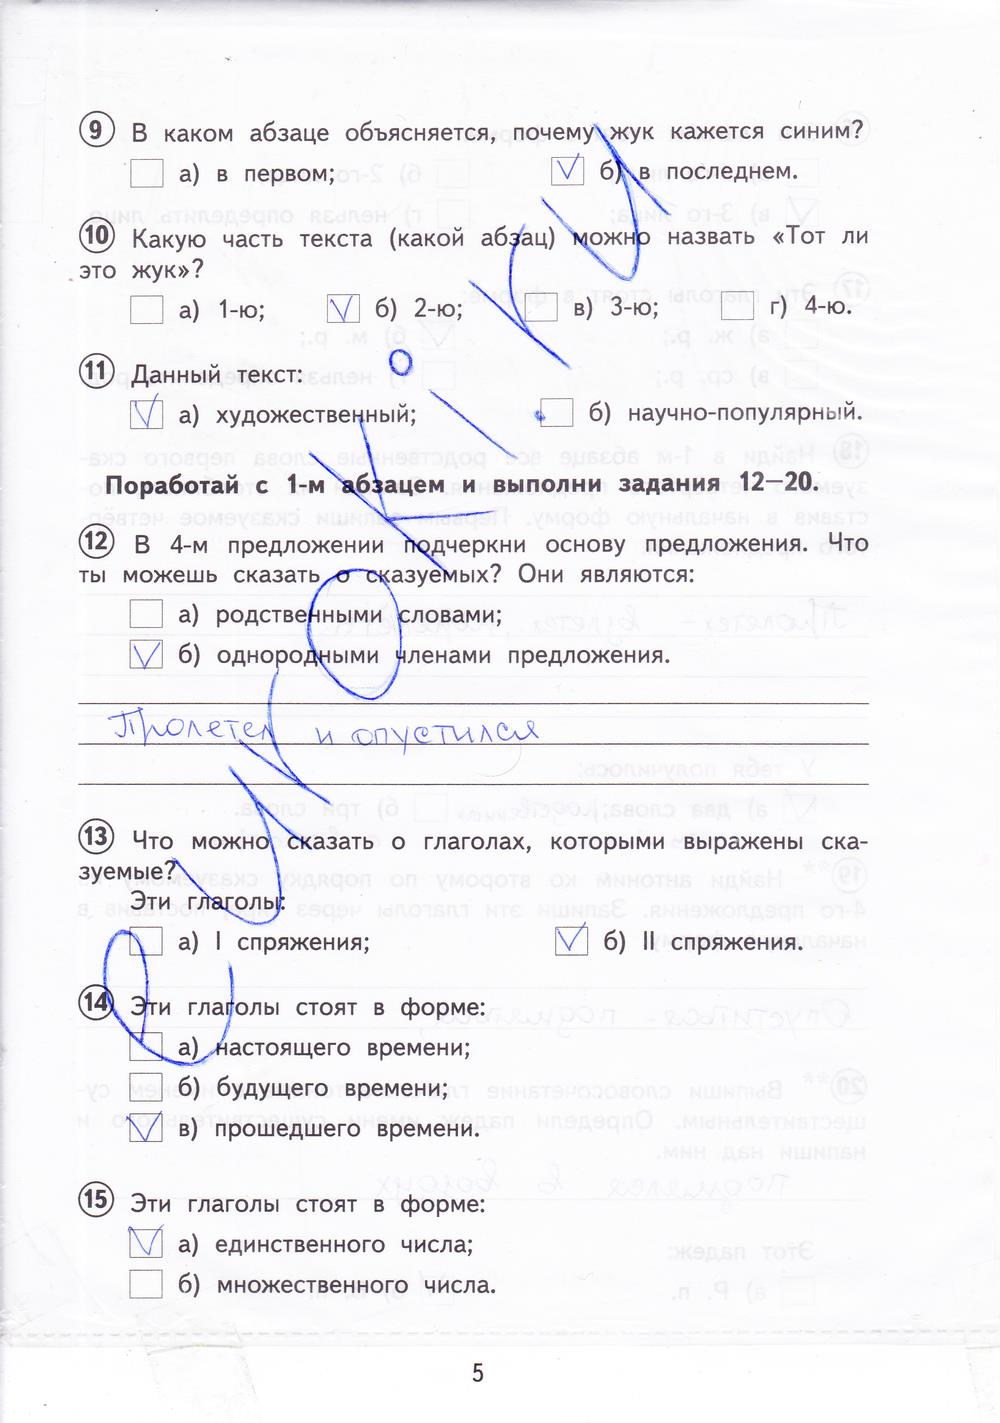 Русский язык 4 класс вариант 2004 ответы. Русский язык тетрадь для проверочных работ 4 класс Лаврова ответы. Русский язык 4 класс проверочные работы стр 4-5.